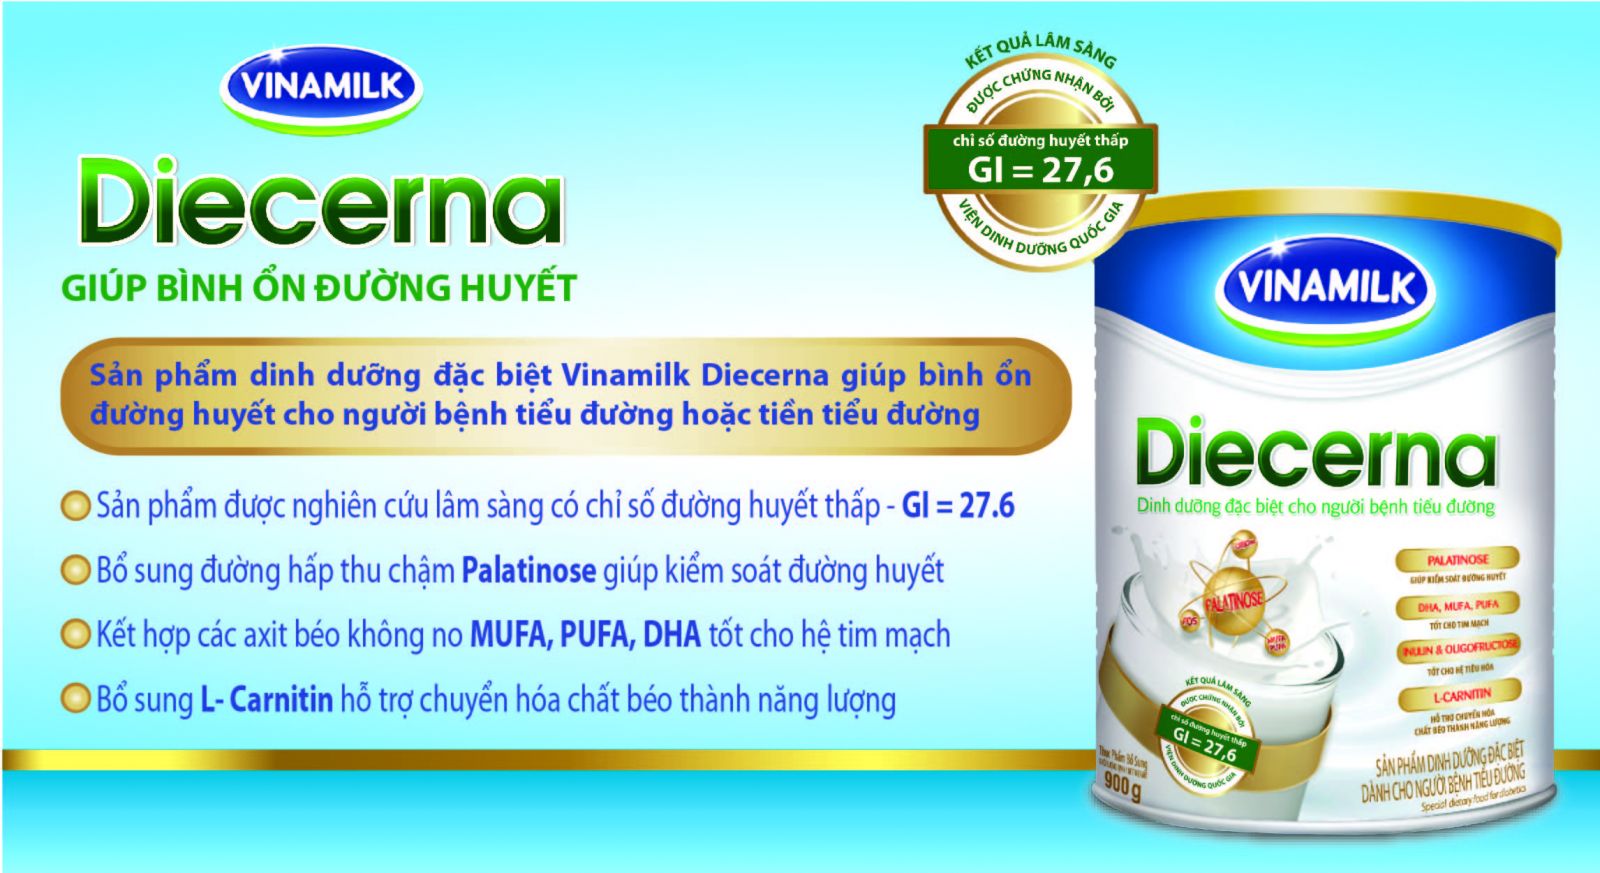 Sữa Diecerna 900g giúp kiểm soát đường huyết tốt nhất